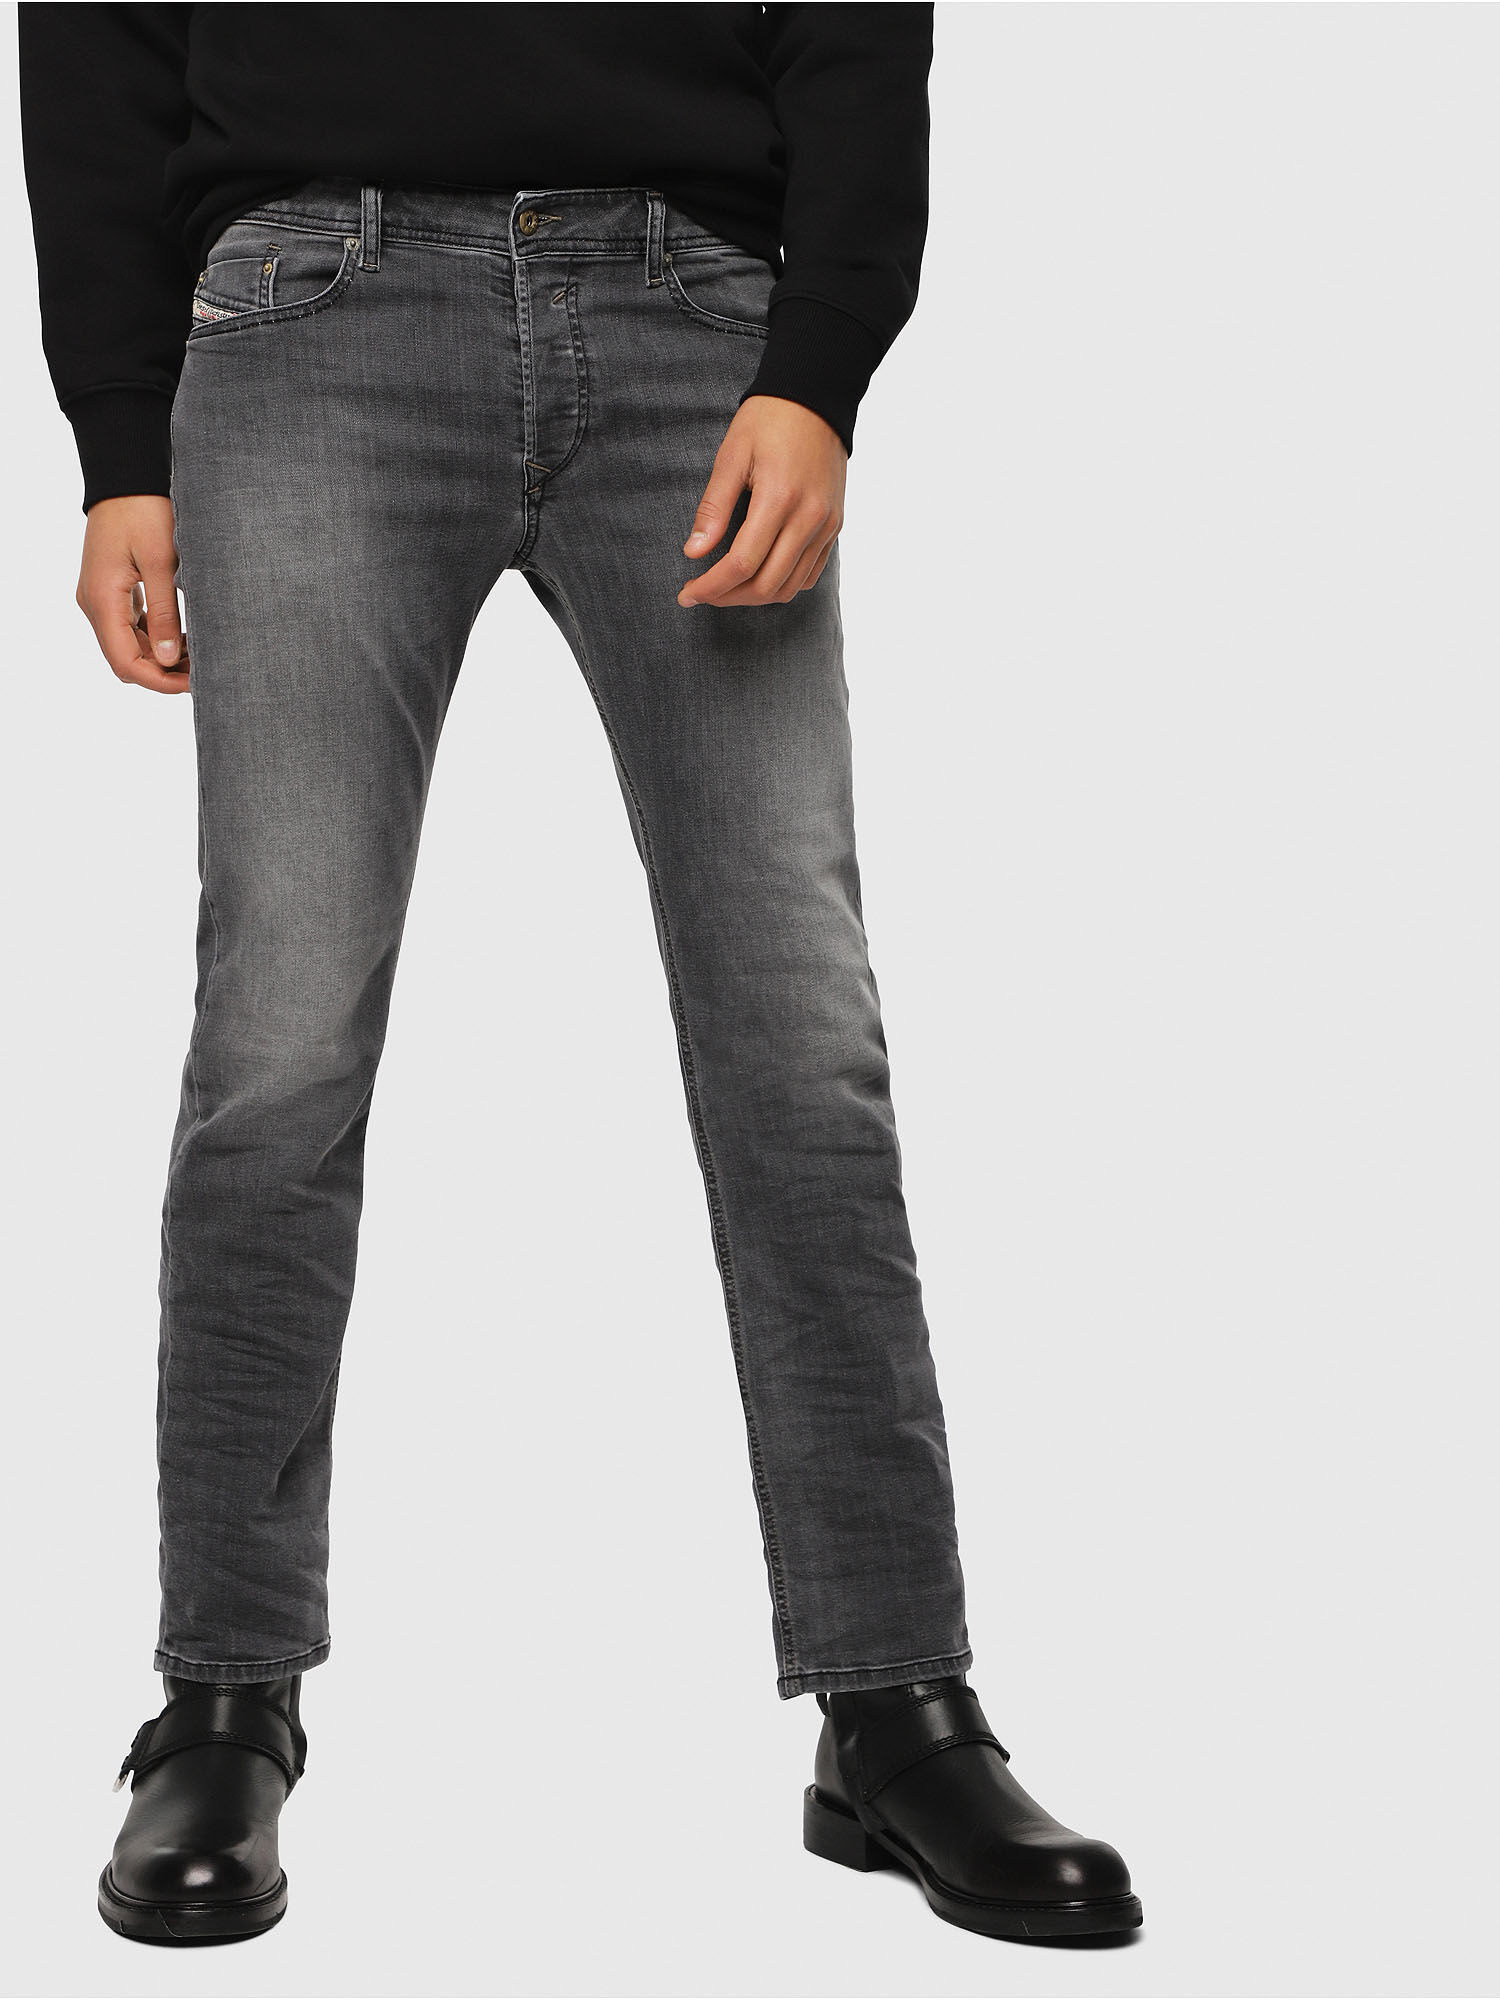 mens grey diesel jeans